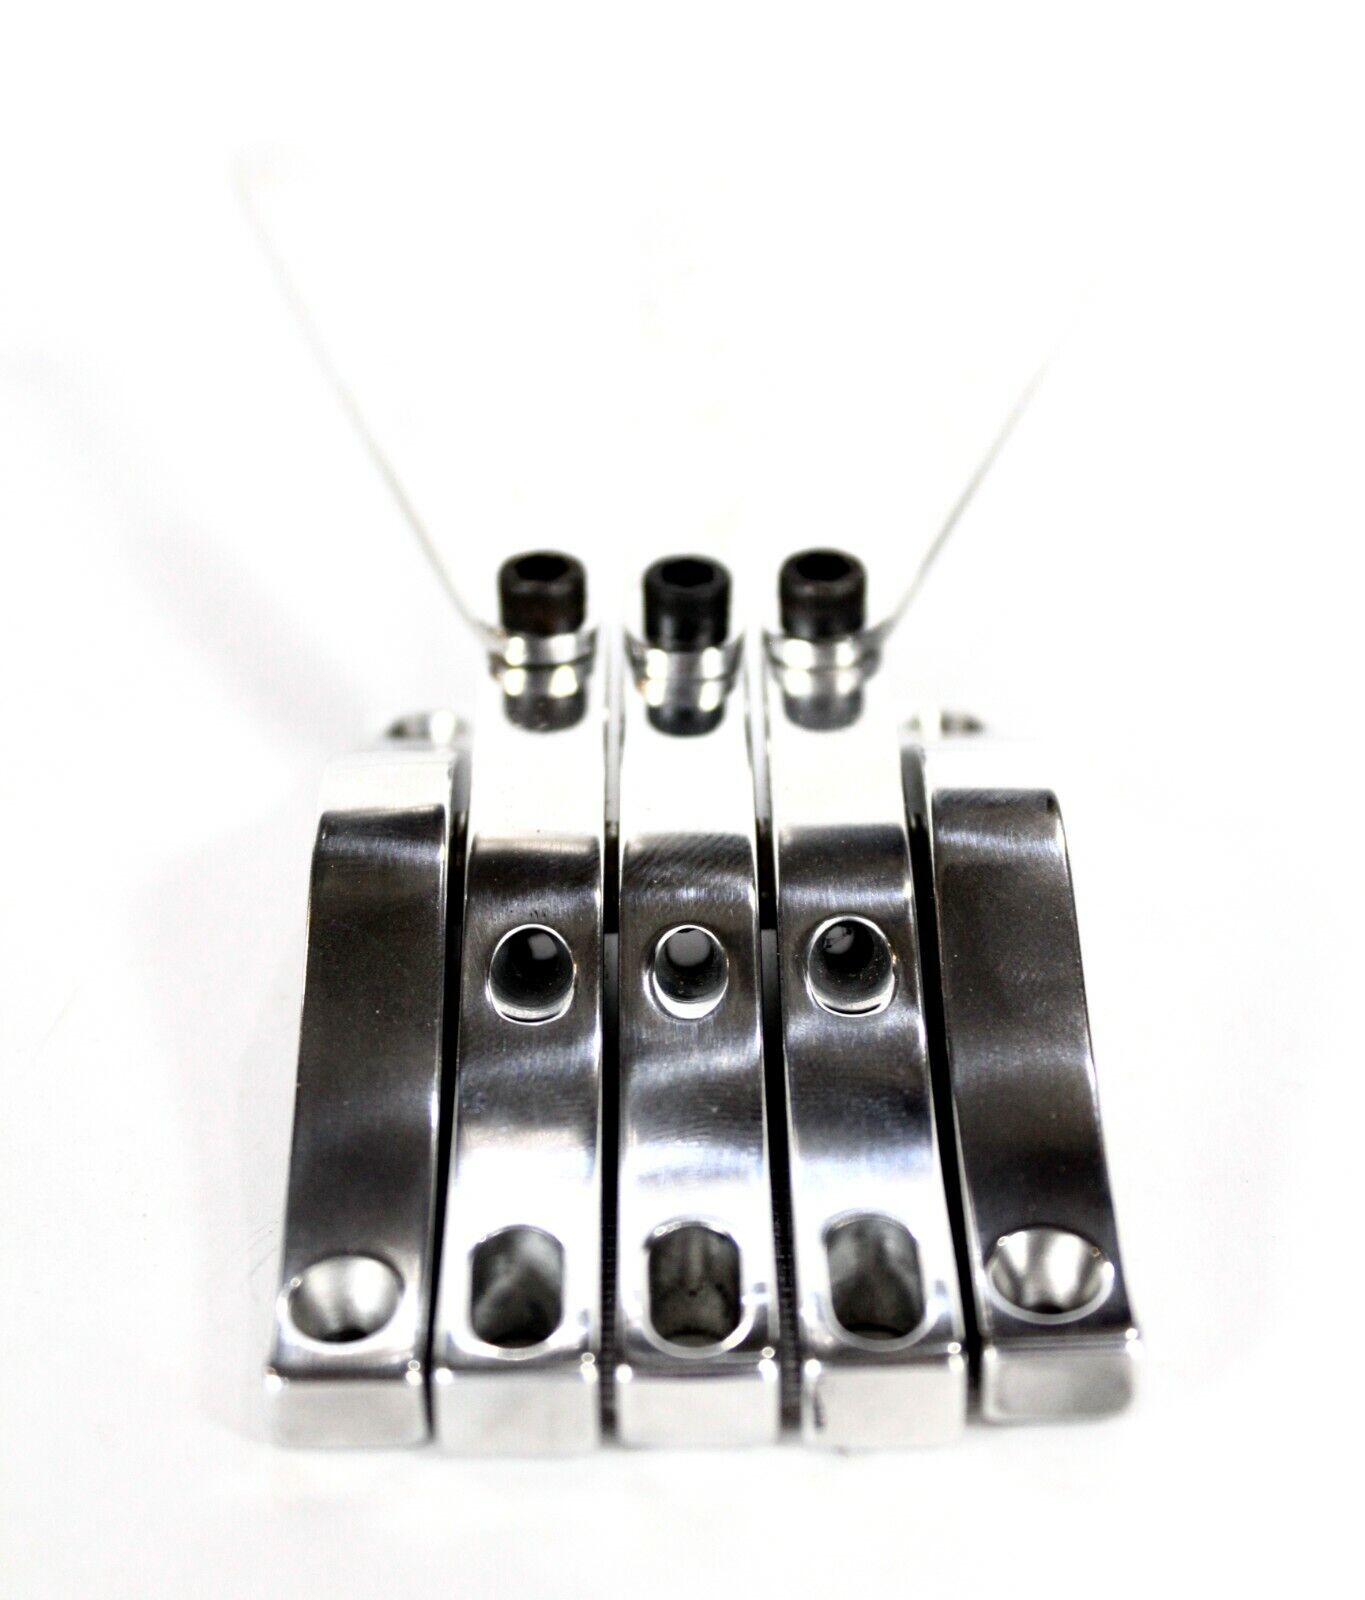 Peters 3 String G/B-bender, palm lever multi bender, lap steel guitar tele